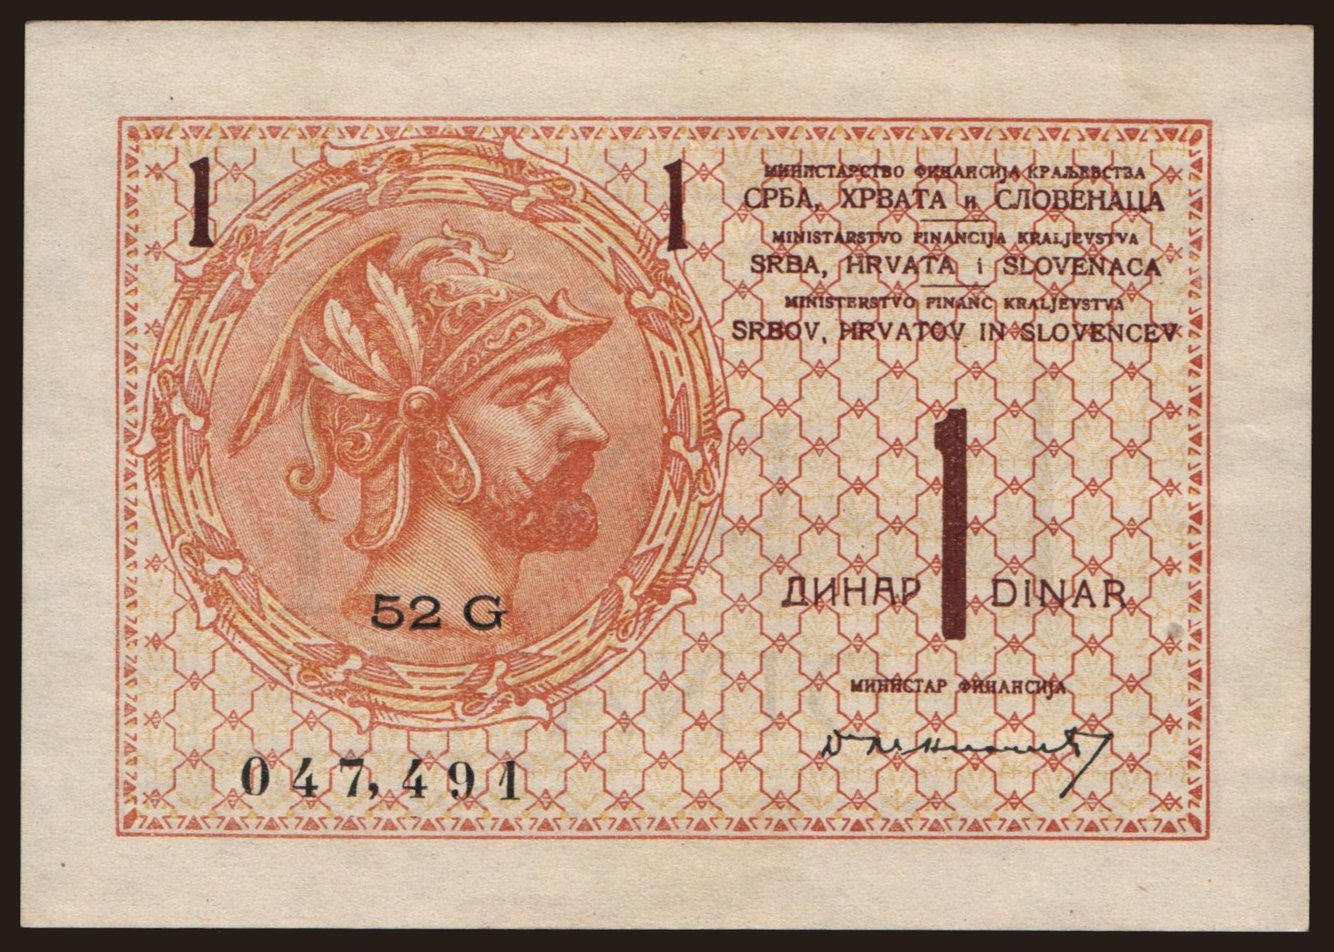 1 dinar, 1919